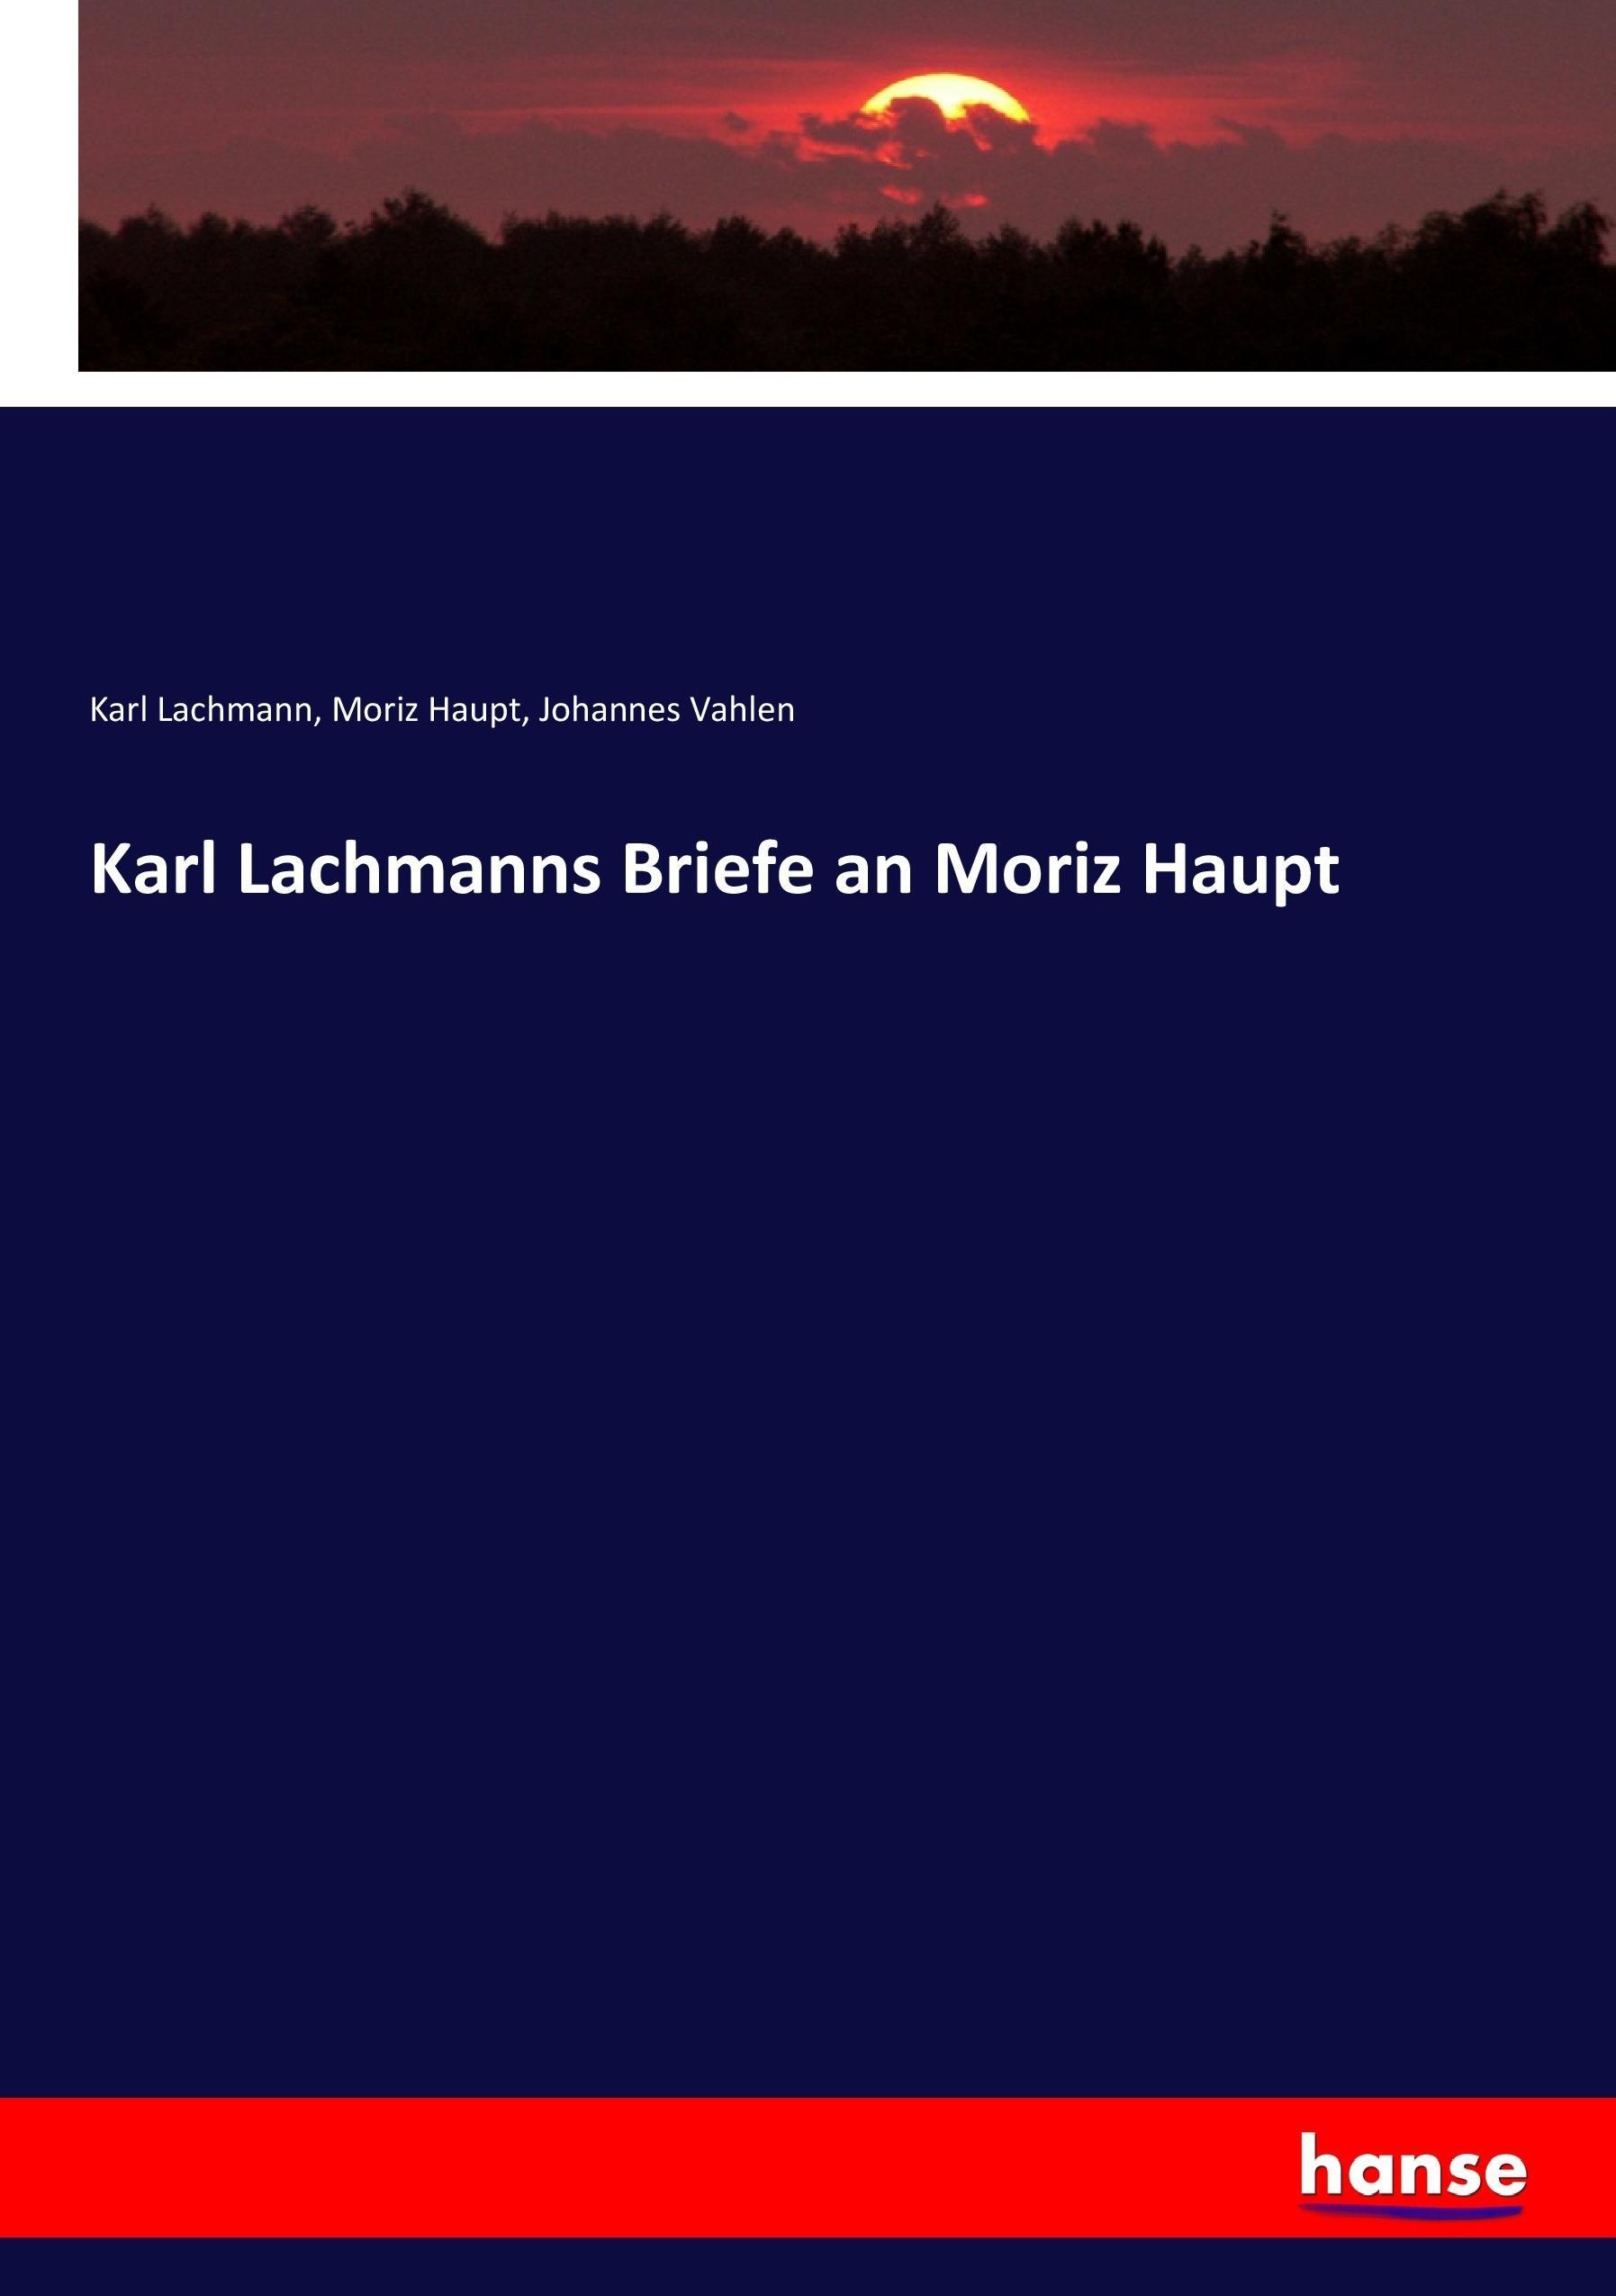 Karl Lachmanns Briefe an Moriz Haupt - Lachmann, Karl Haupt, Moriz Vahlen, Johannes